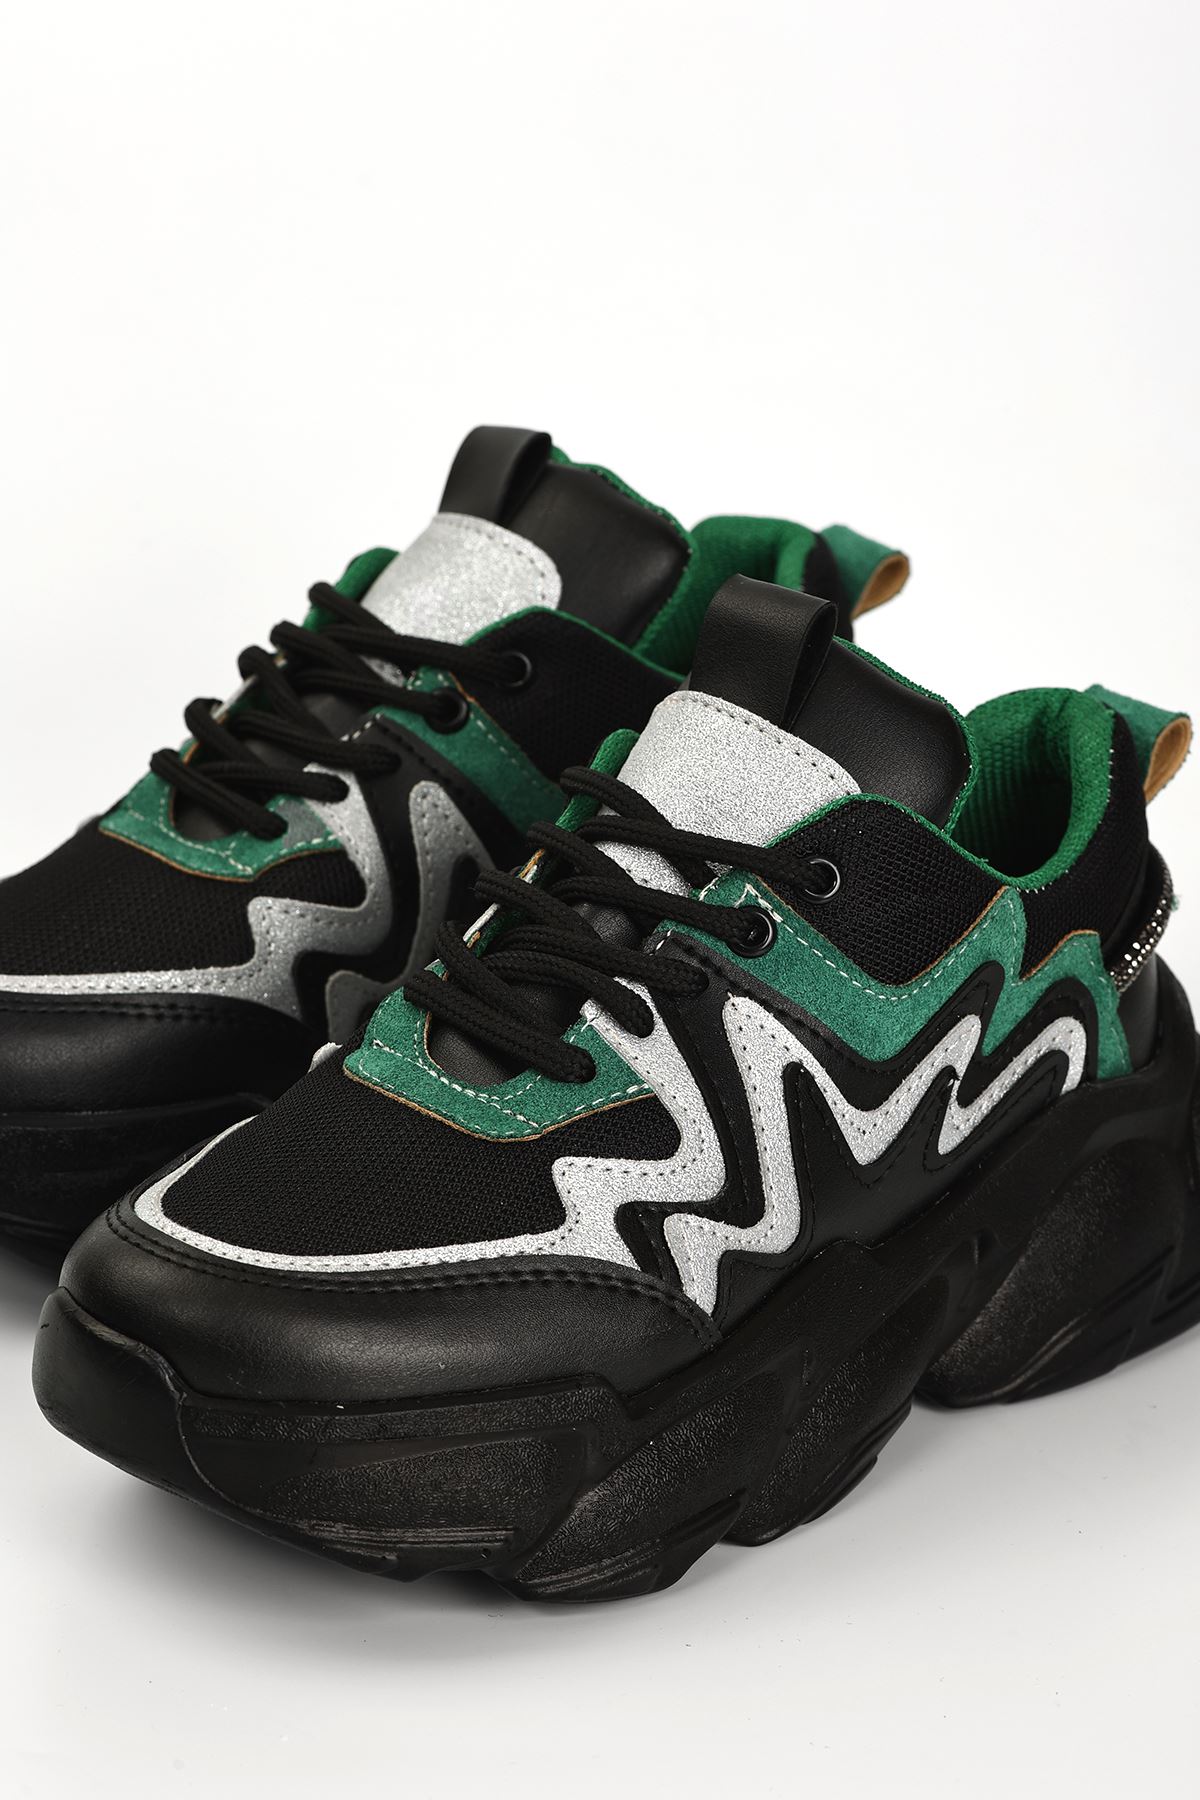 Osila Yeşil Parçalı Bağcık Detaylı Siyah Kadın Spor Ayakkabı